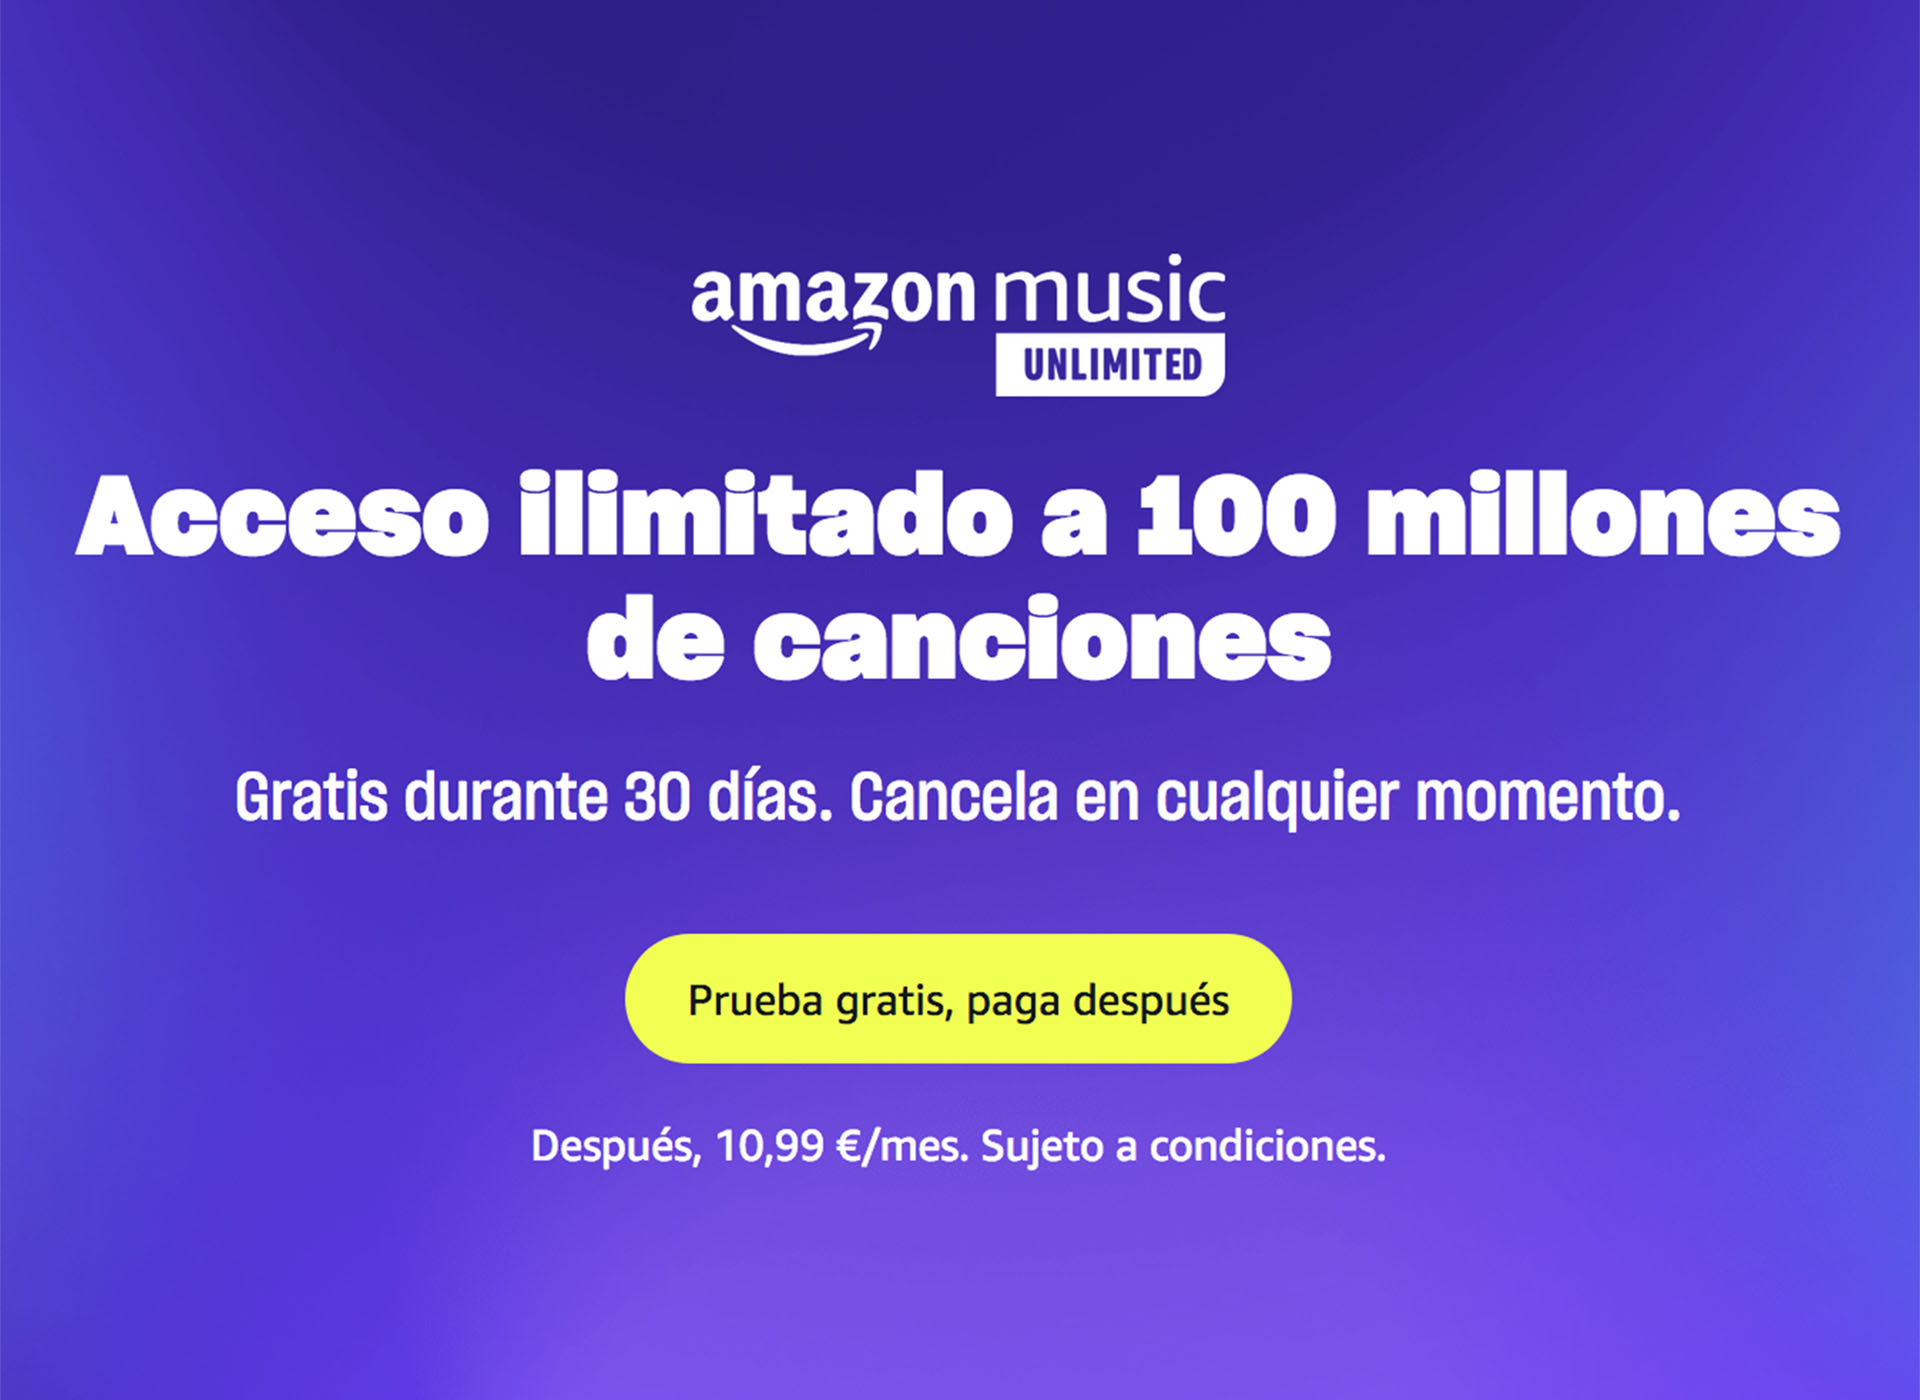 Amazon Music Unlimited. Acceso ilimitado a 100 millones de canciones. Gratis durante 30 días. 